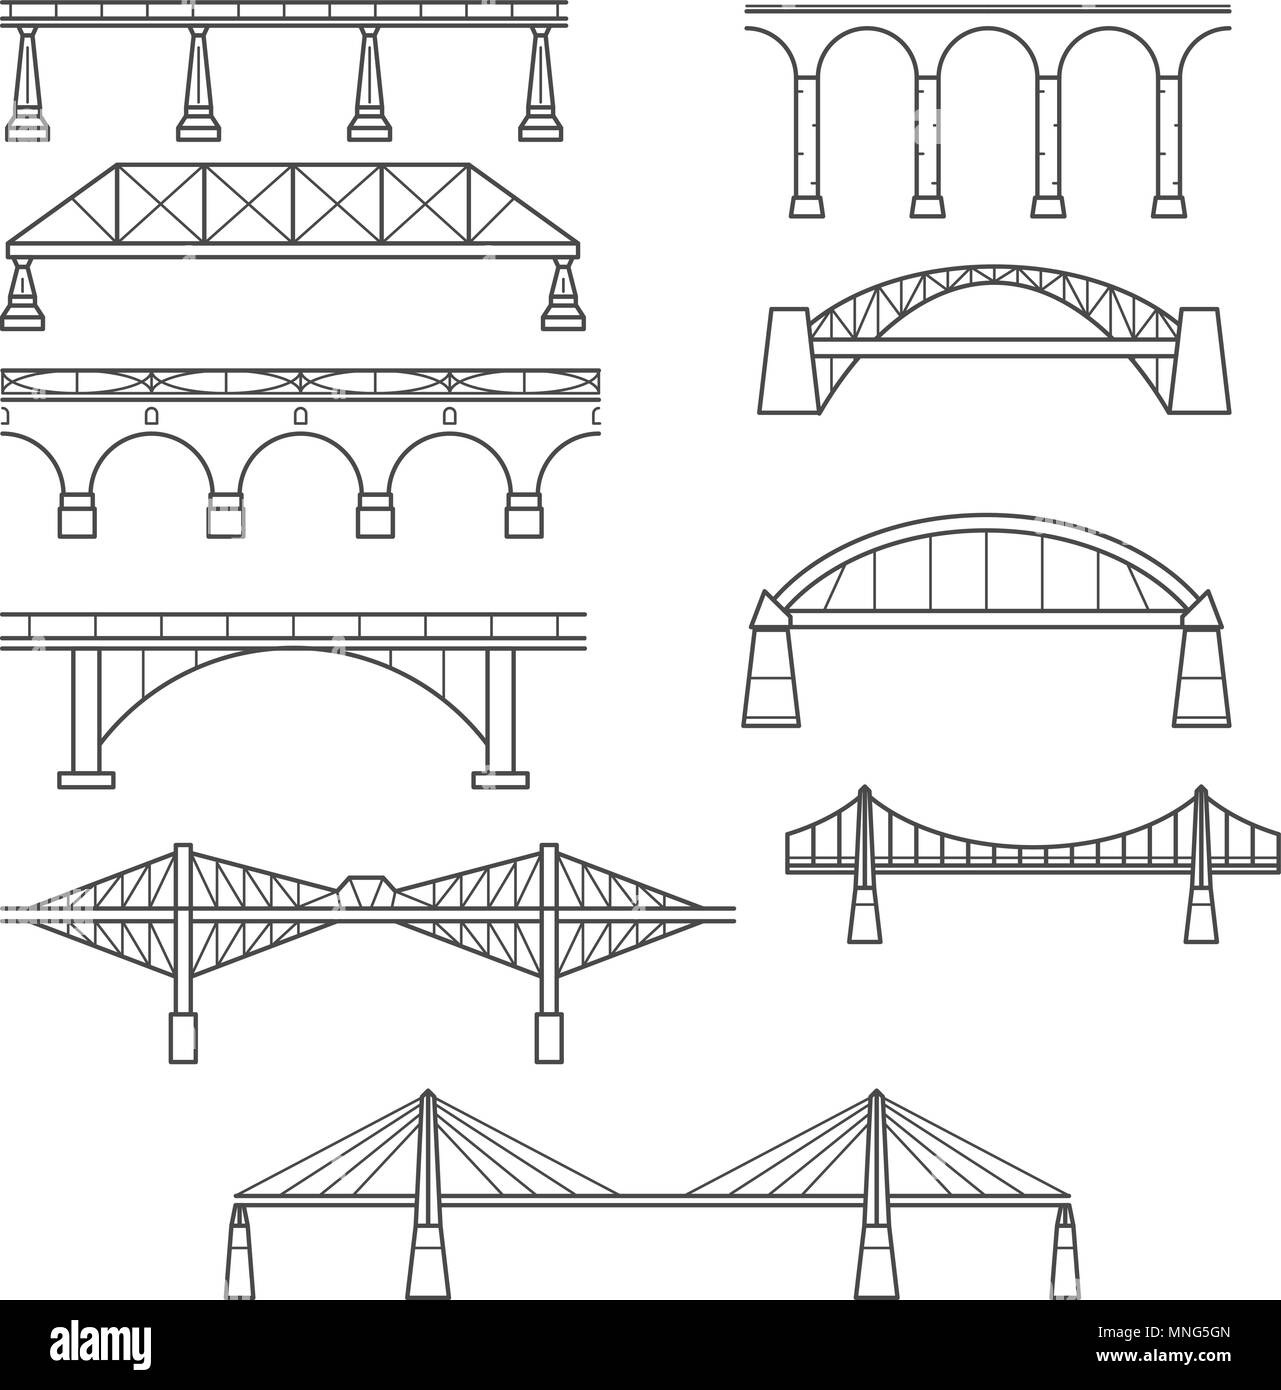 Tipi di ponti in stile lineare set - icona infografico di ponti Illustrazione Vettoriale